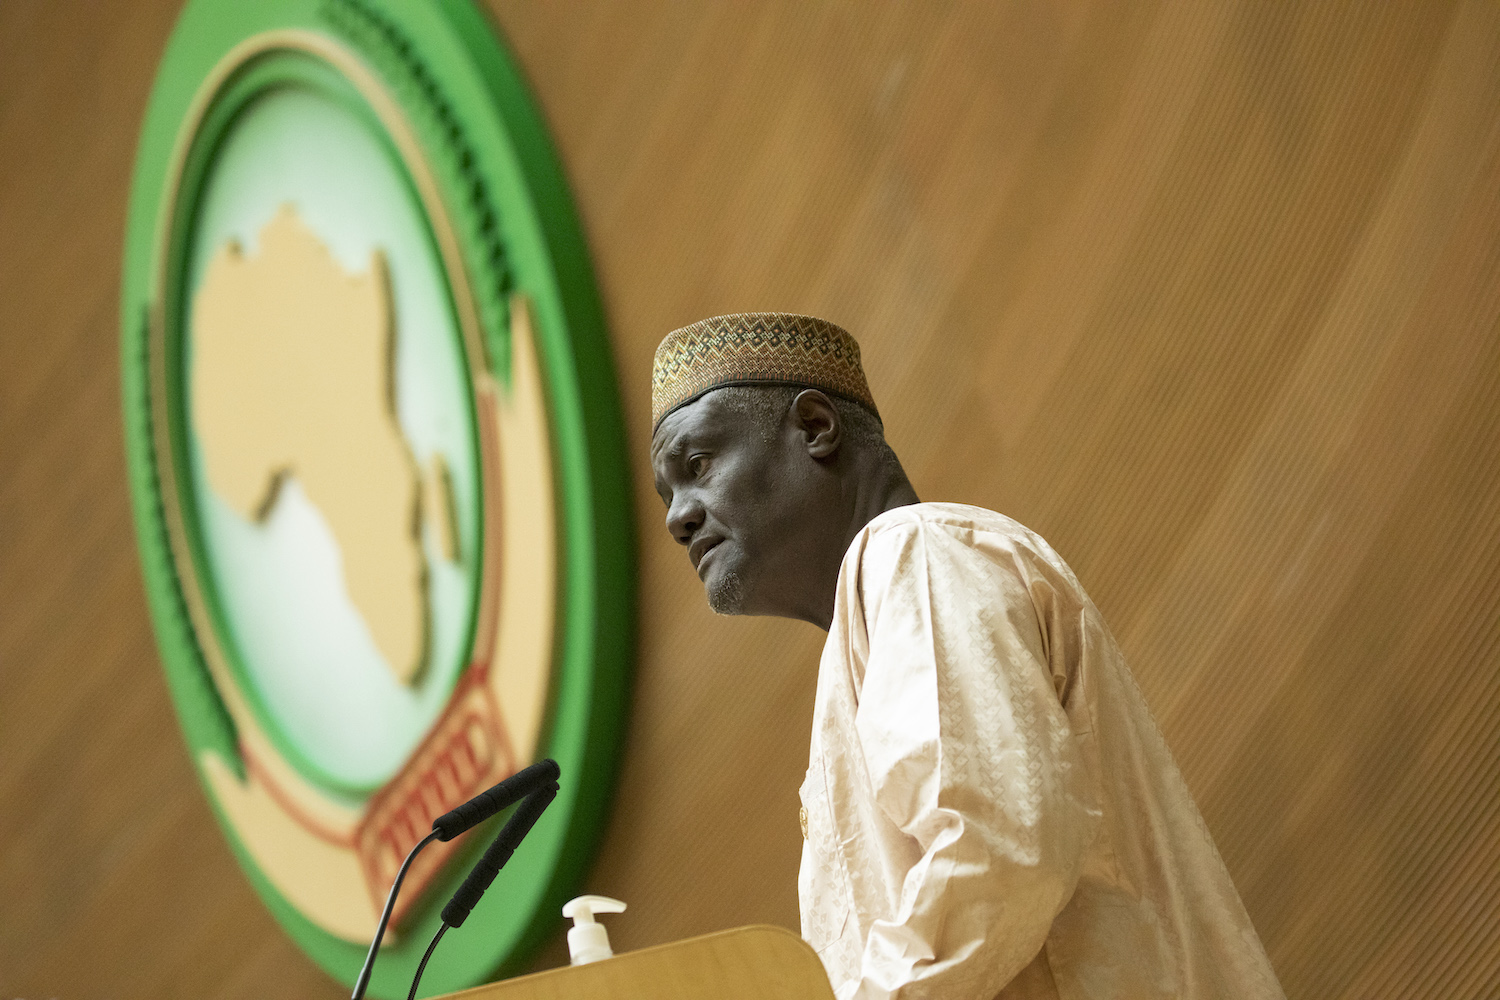 Allocution du Président de la Commission de l'Union Africaine, S.E. Moussa Faki Mahamat, à l'occasion de la 36ème Assemblée ordinaire des chefs d'État et de gouvernement de l'Union Africaine